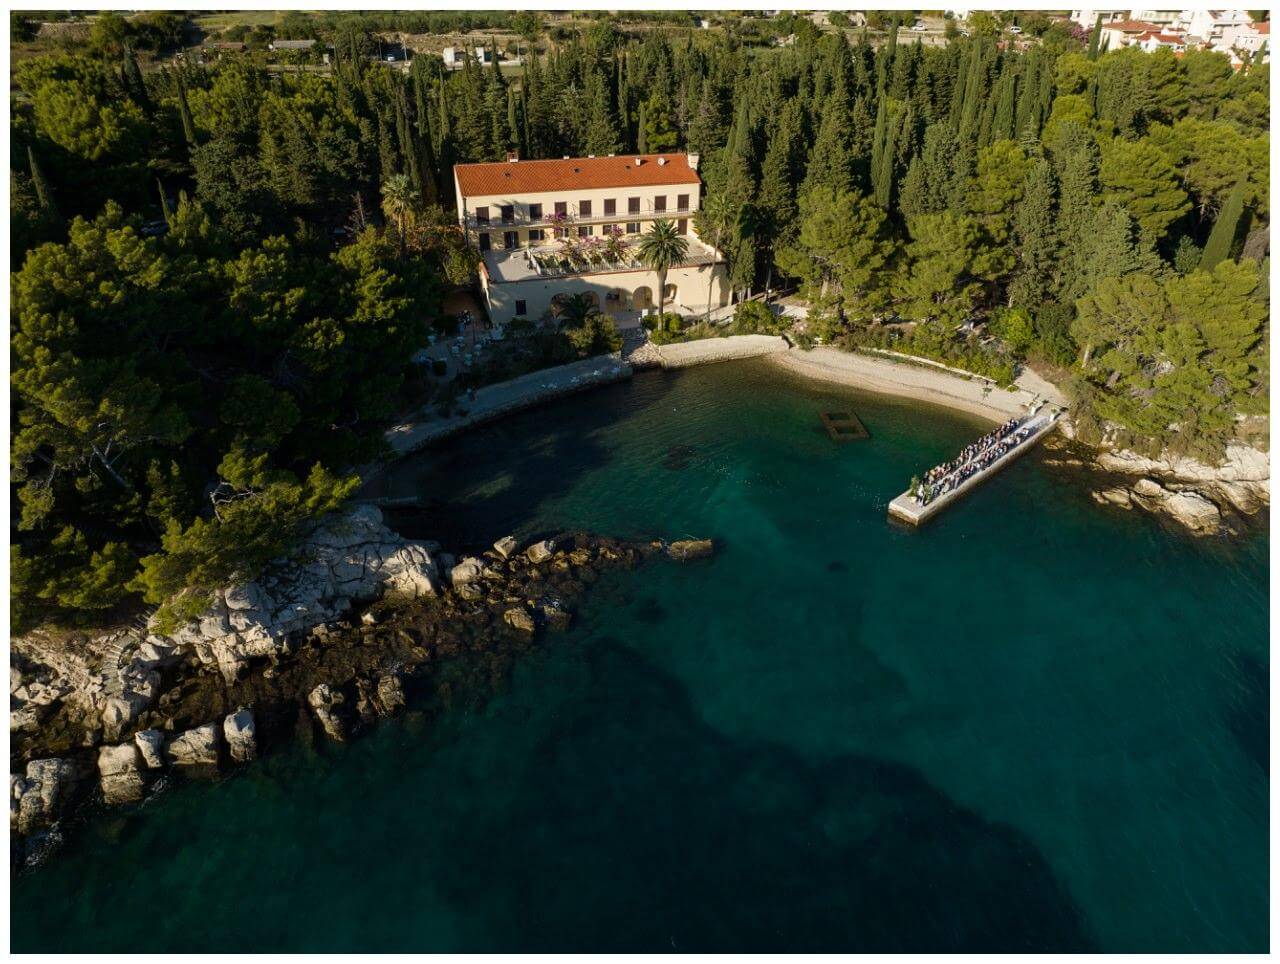 Private Villa Kroatien am Meer Real Wedding Kroatien, wedding in croatia,hochzeitsplanerin kroatien, hochzeit in kroatien